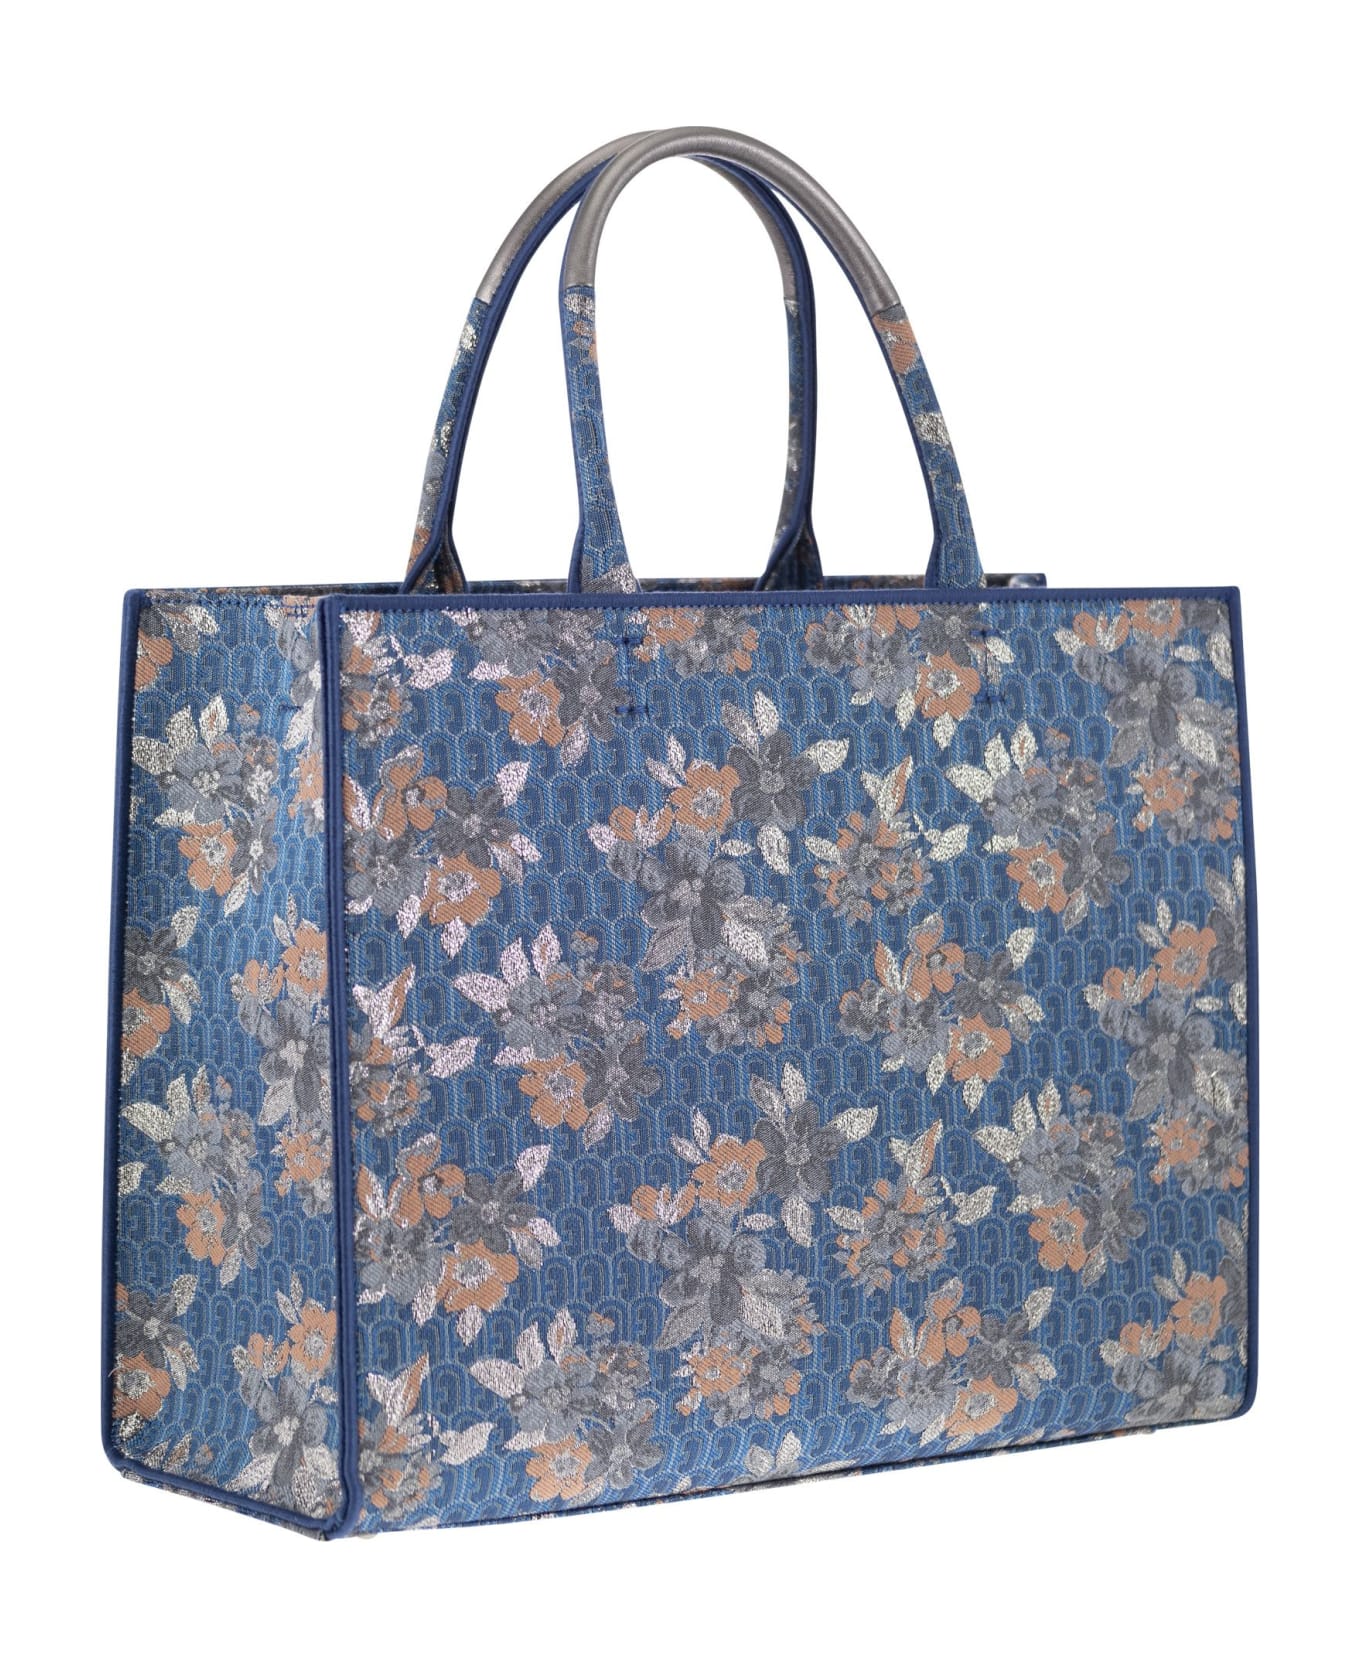 Furla Multicolor Fabric Bag - Light Blue